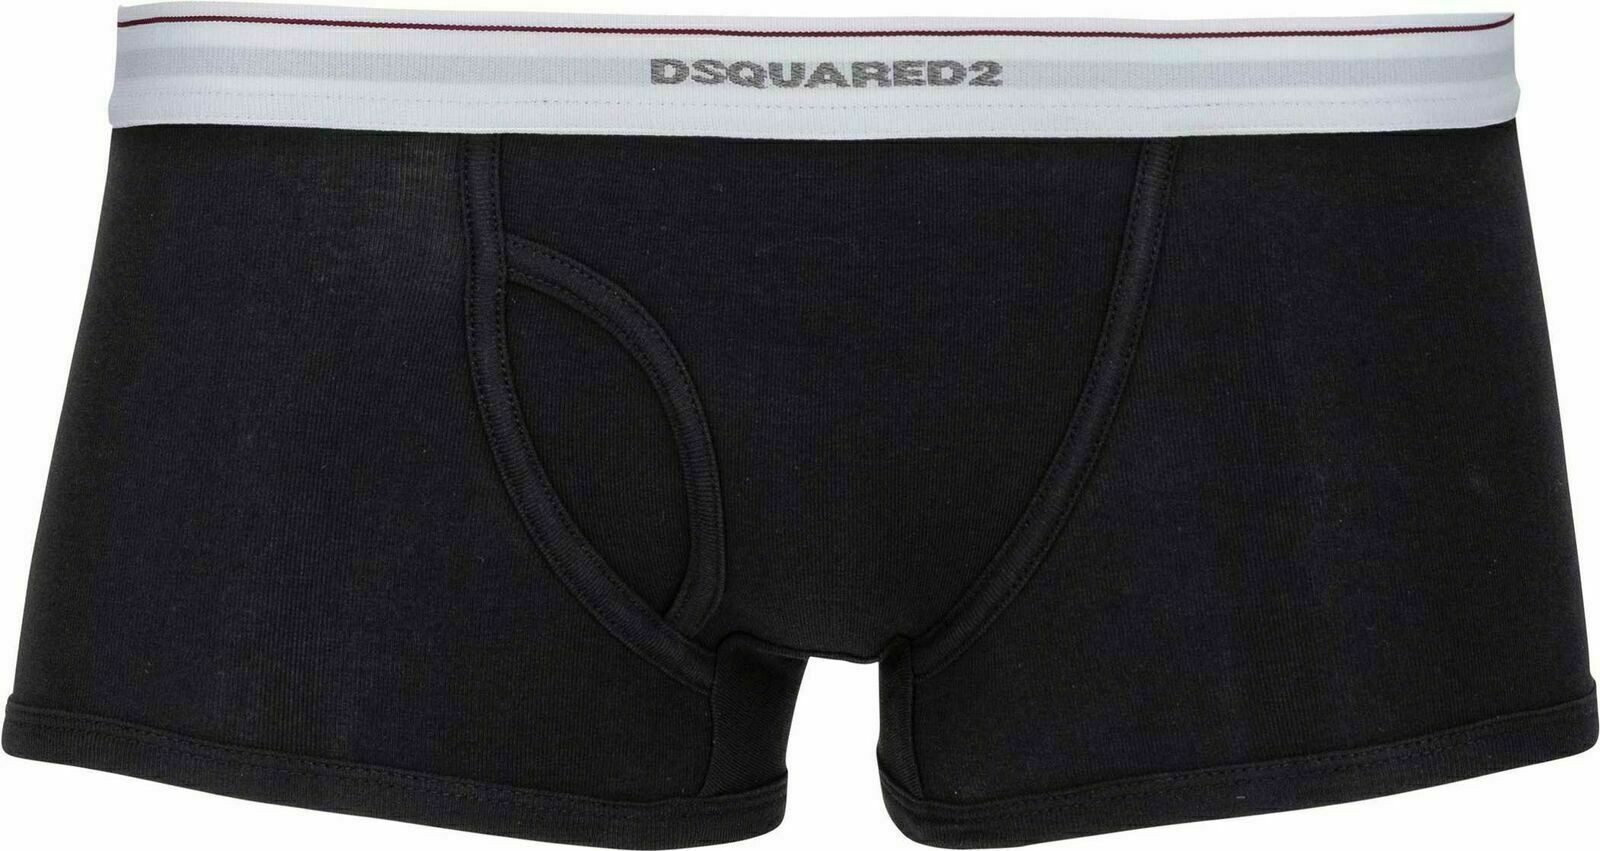 Dsquared2 Boxershorts Dsquared² Underwear Stretch Rib Cotton Unterwäsche Boxer Briefs Boxers